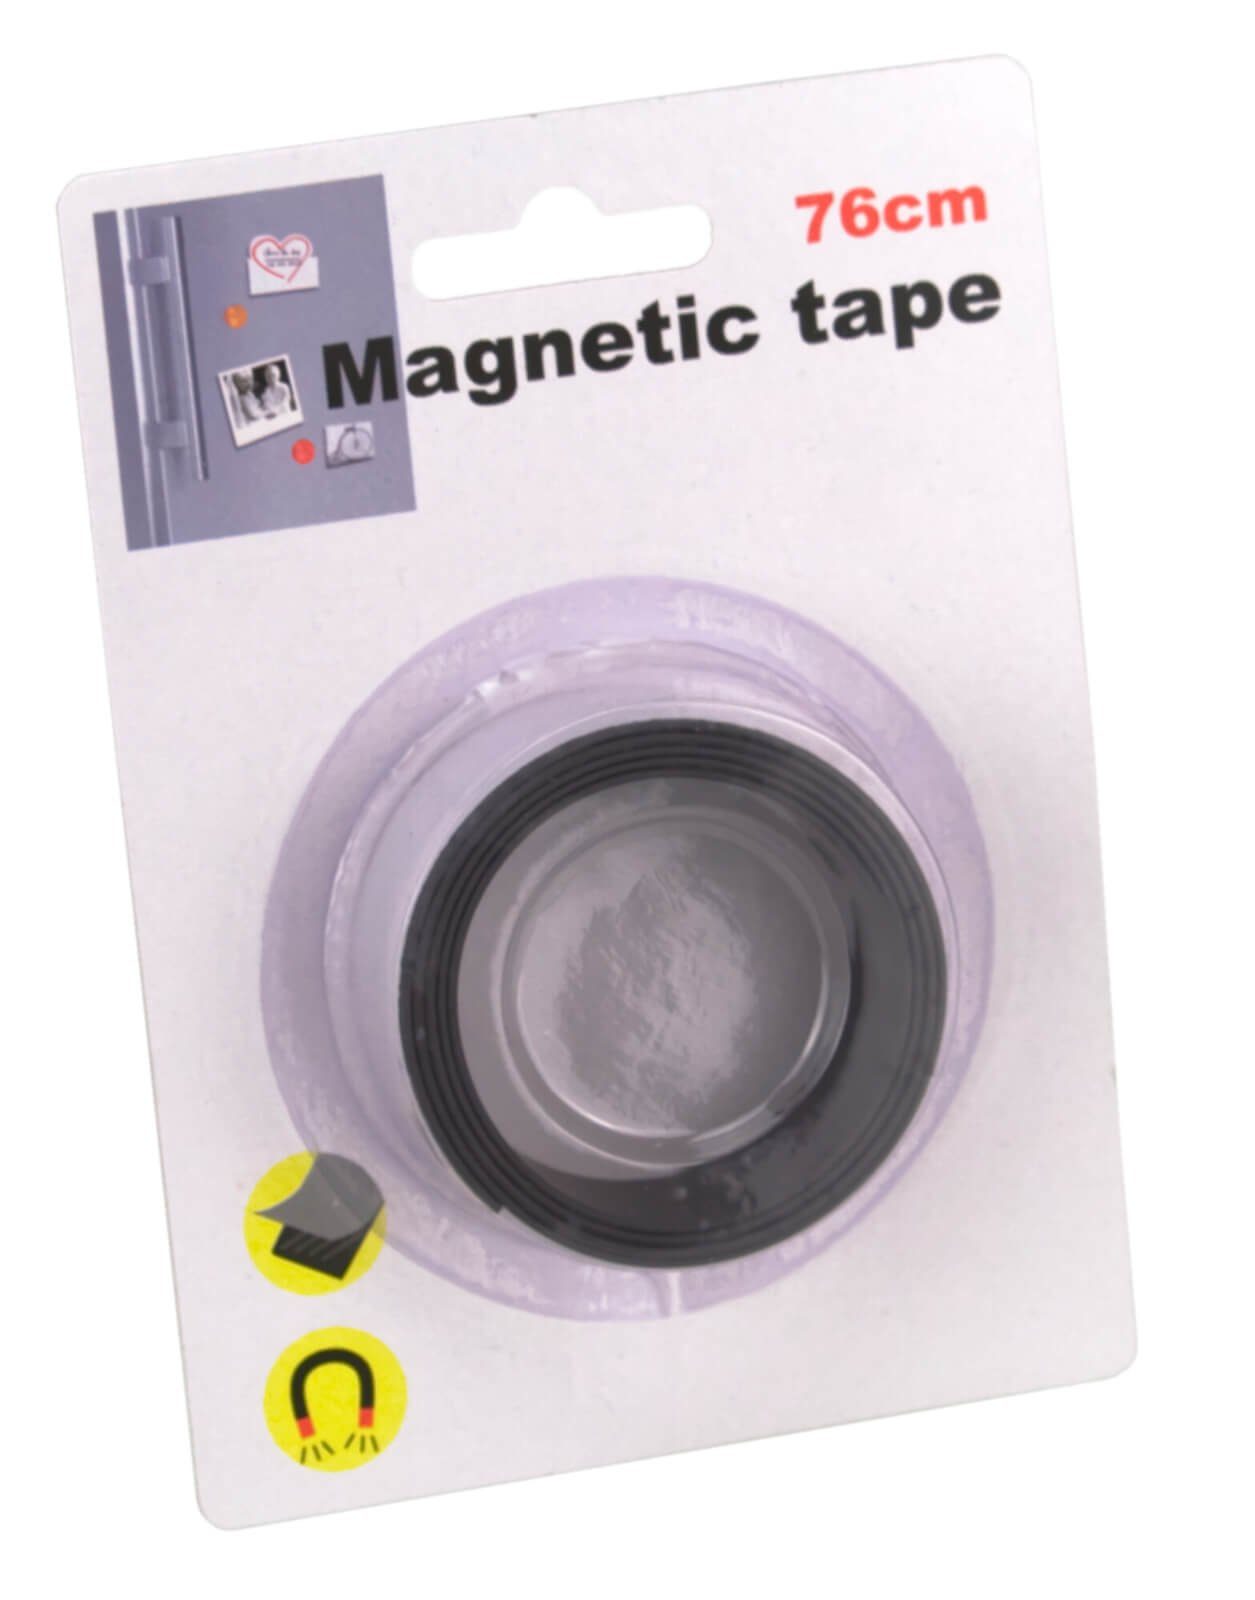 Klebeband Tape Magnetklebeband magnetisches 76cm